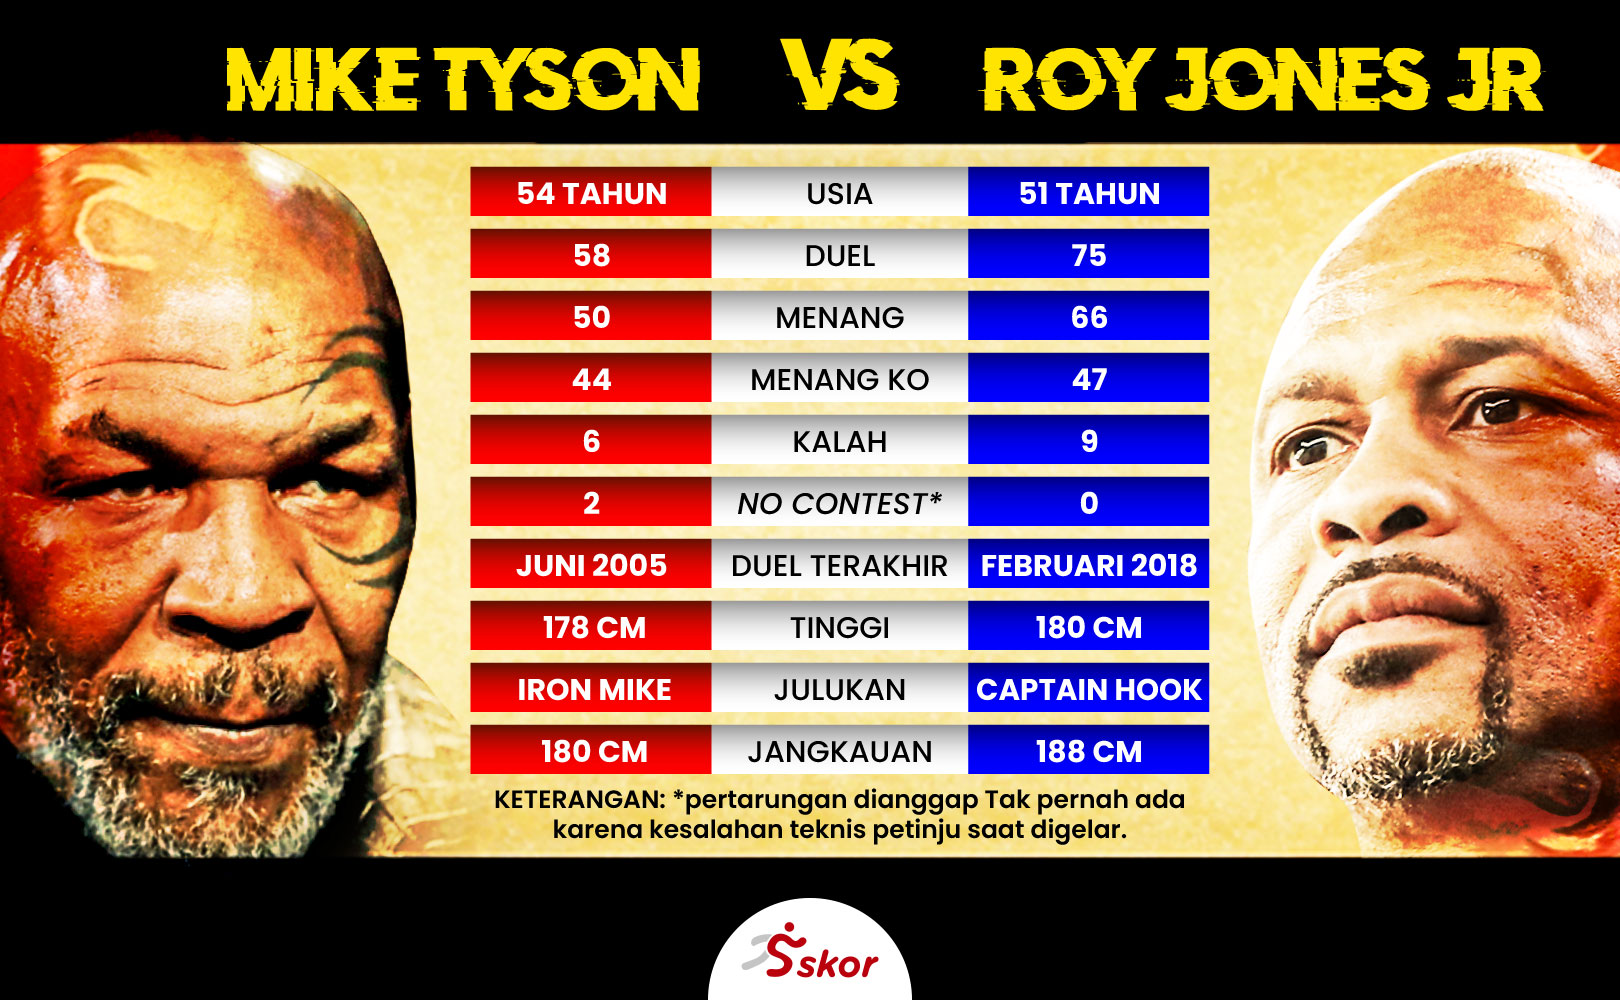 Mengintip Kekuatan-Kelemahan Mike Tyson dan Roy Jones Jr